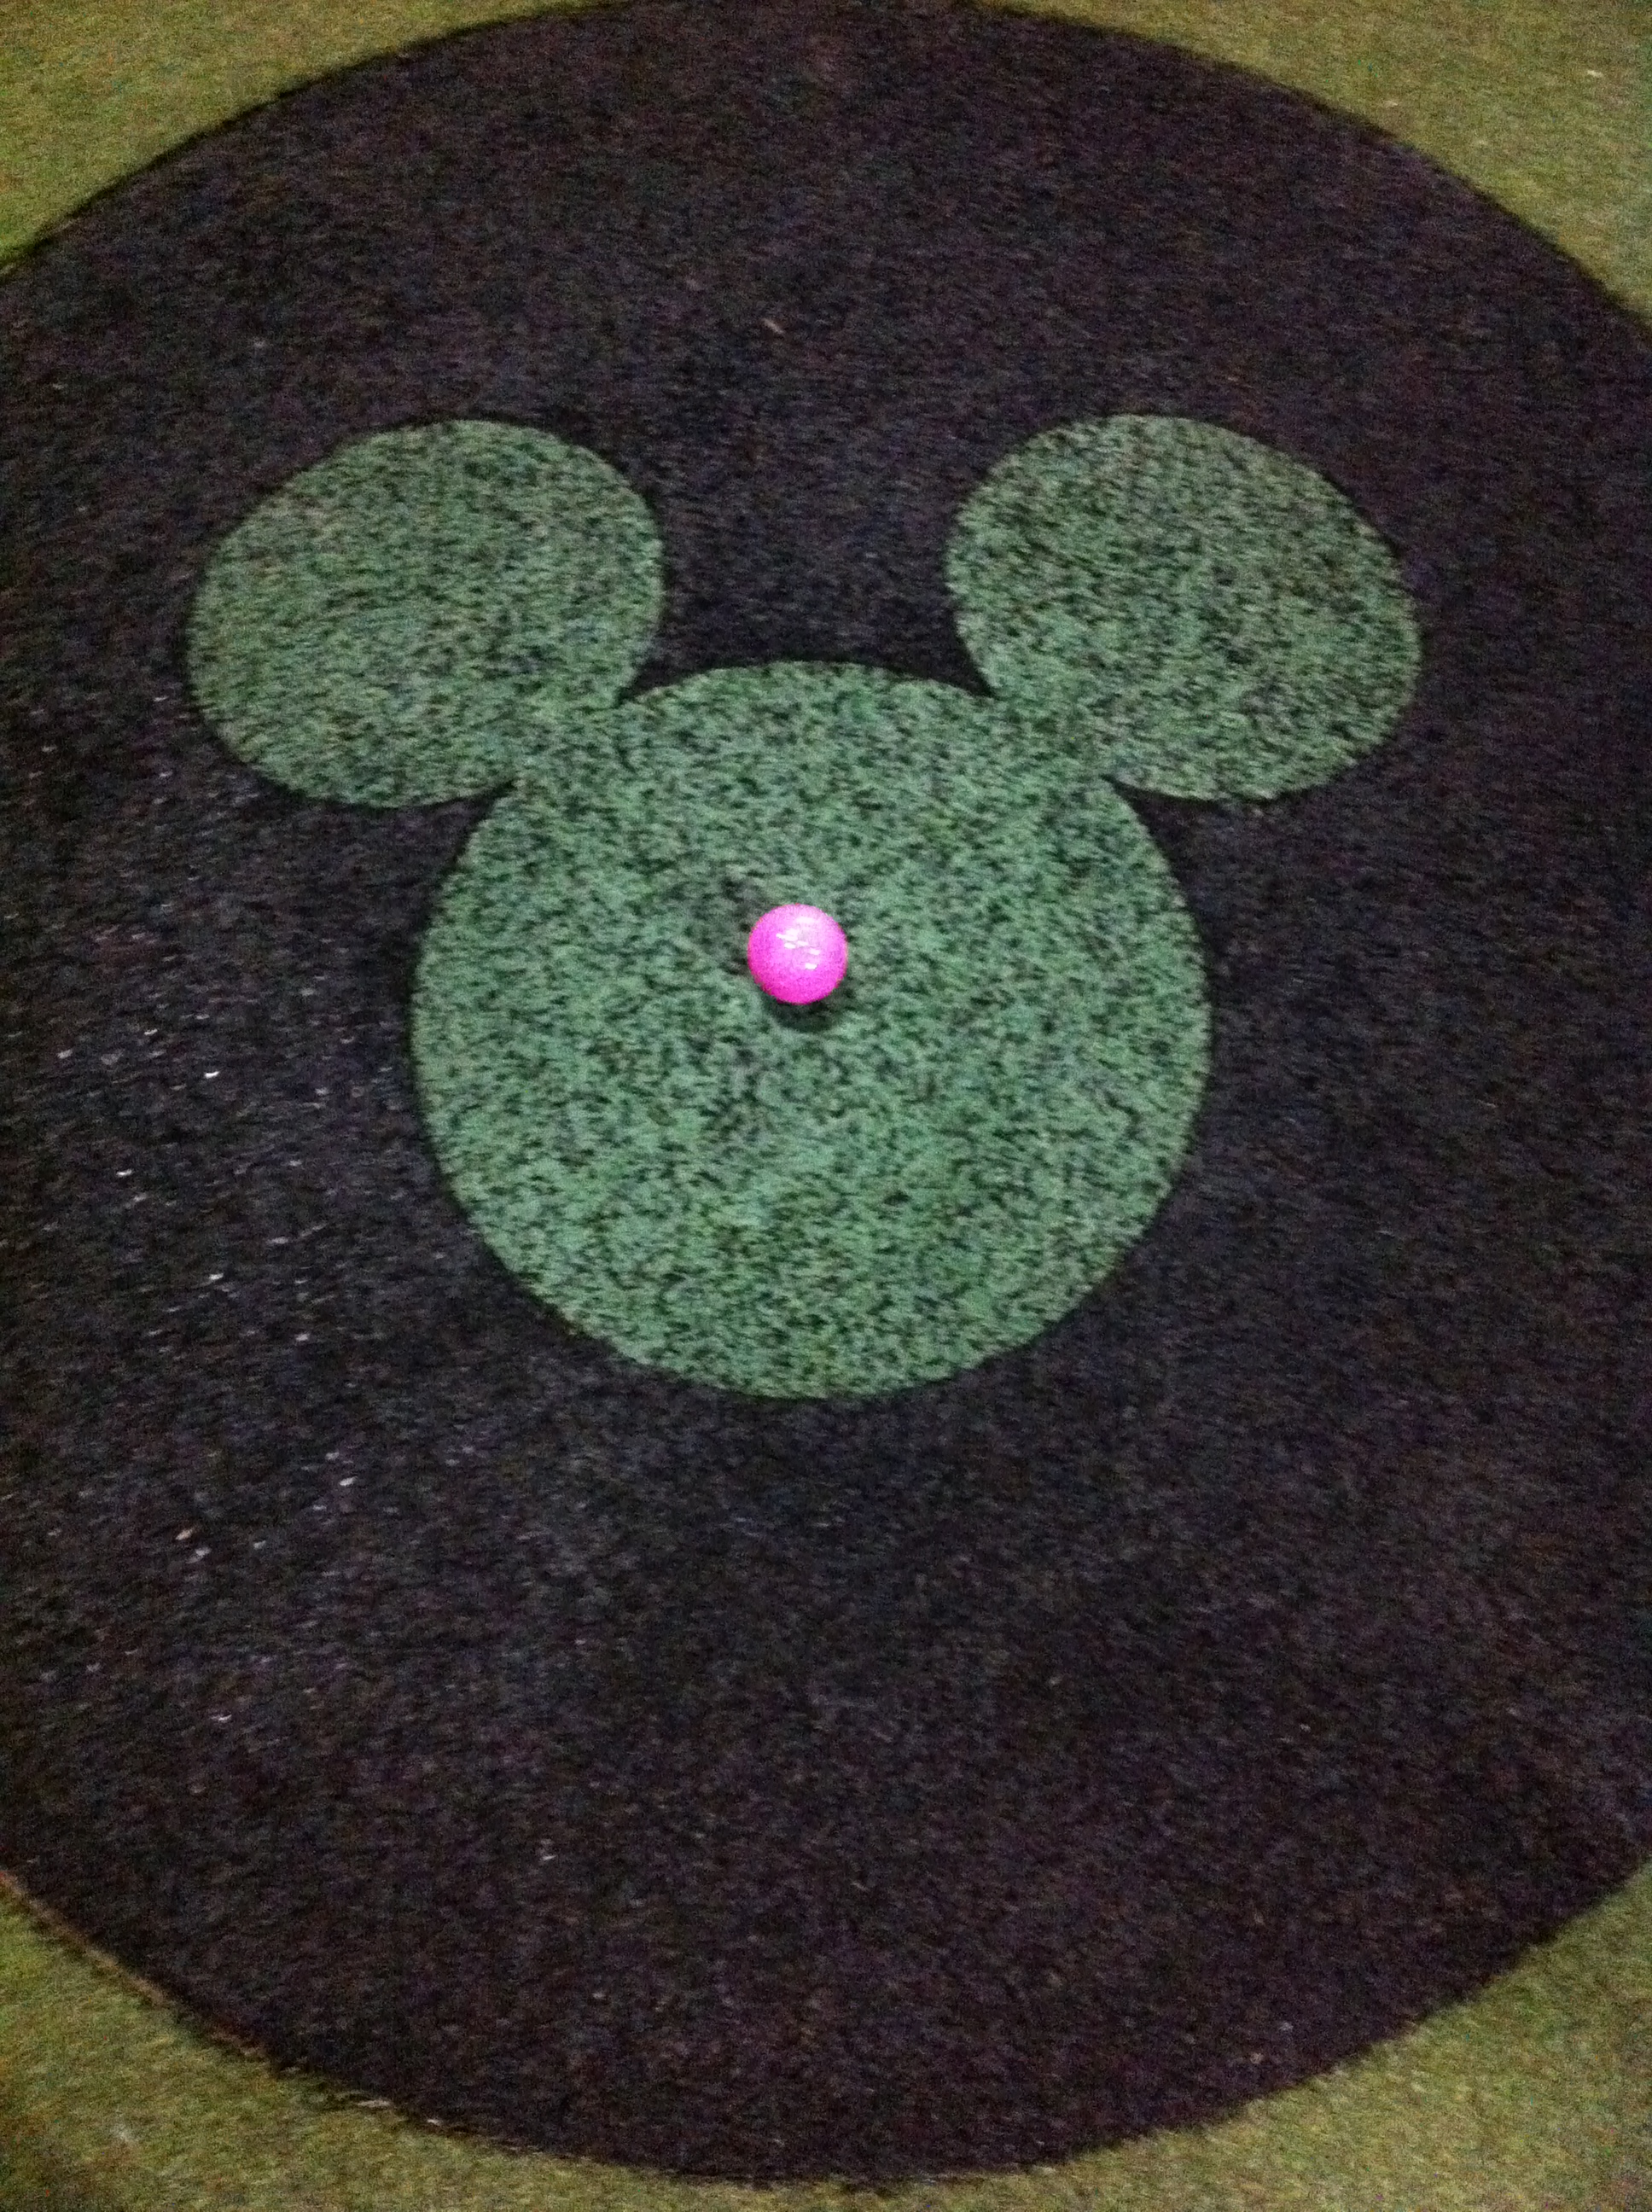 Mini Golf at Disney